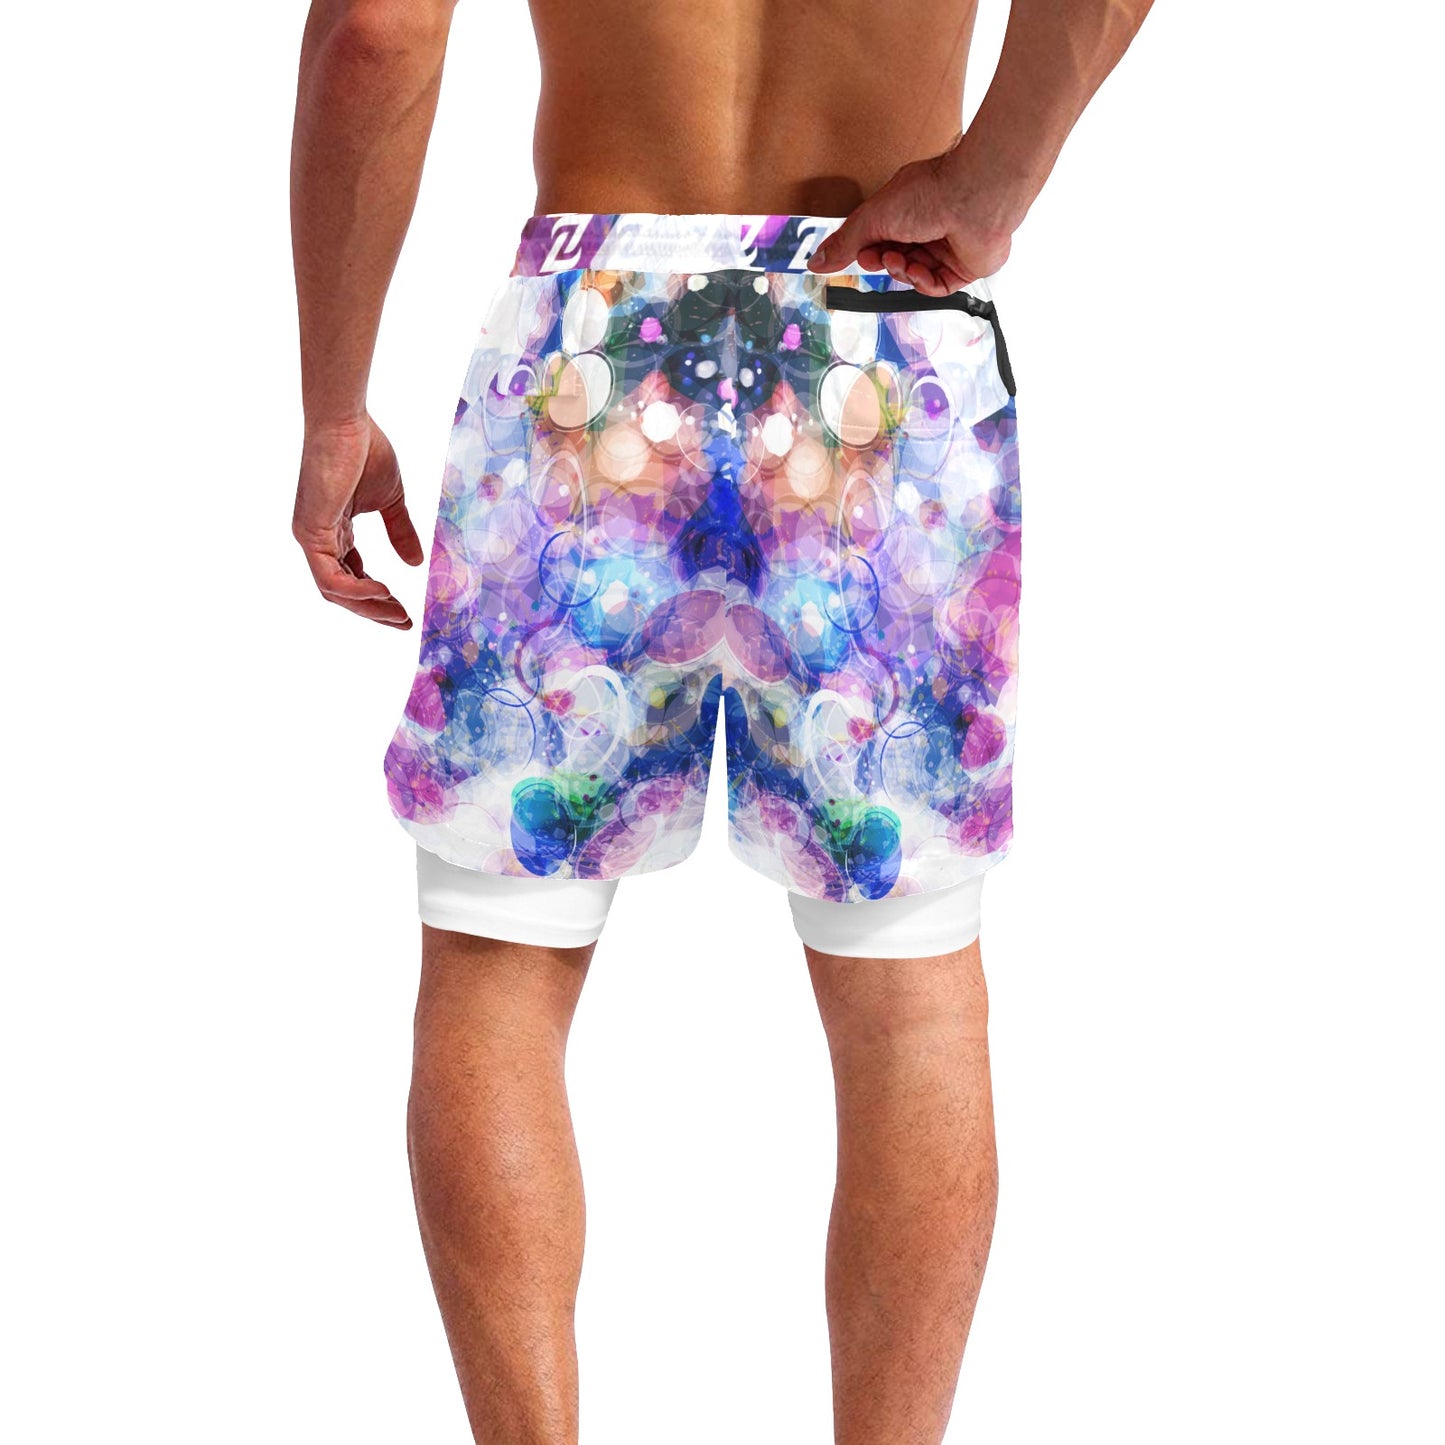 Zen Shorts with Liner - Color Bubbles